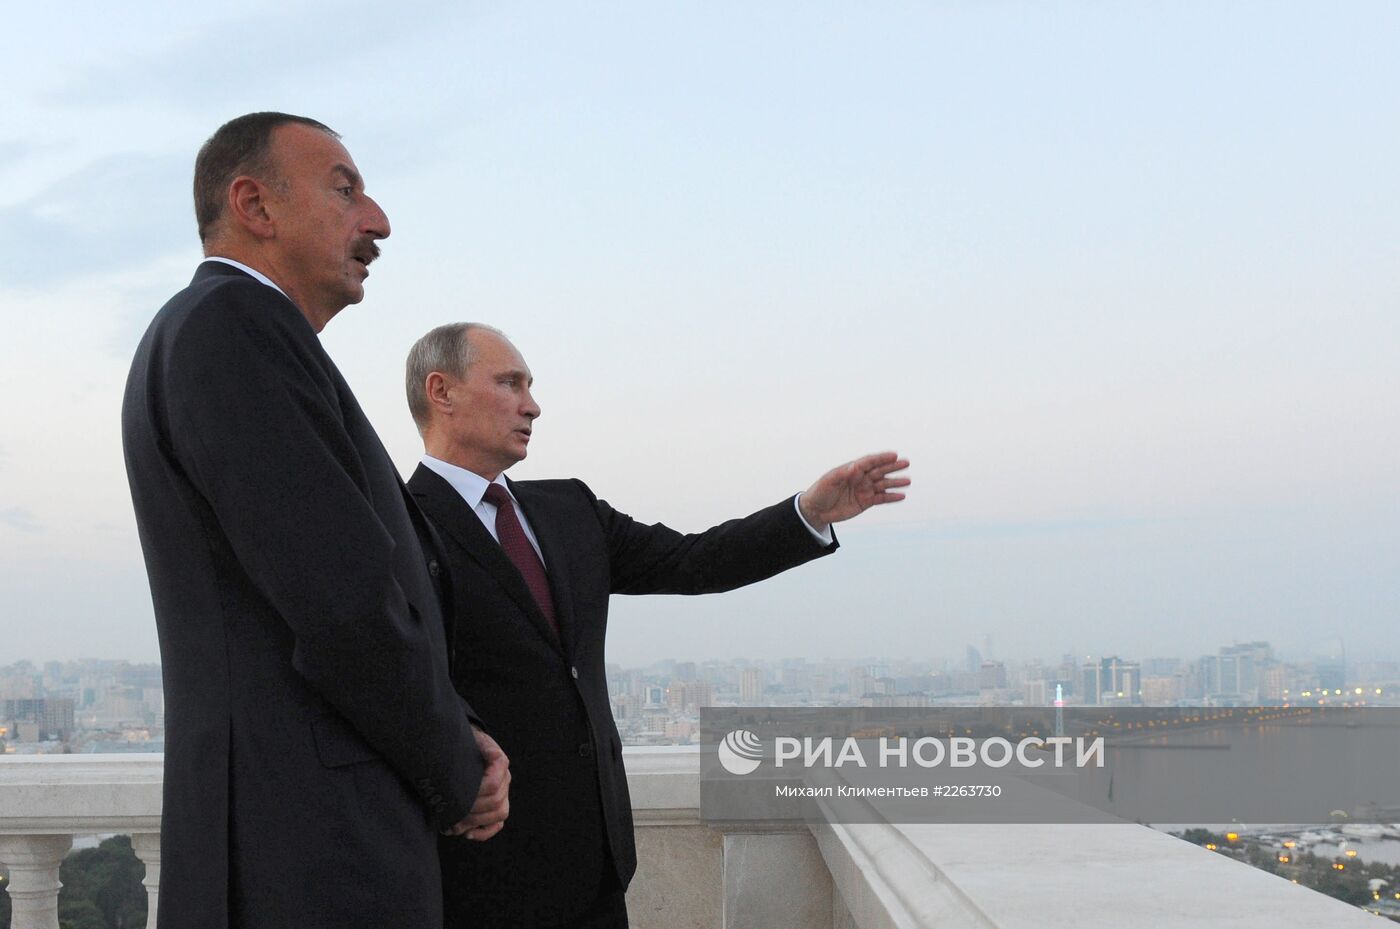 Рабочий визит В.Путина в Азербайджан